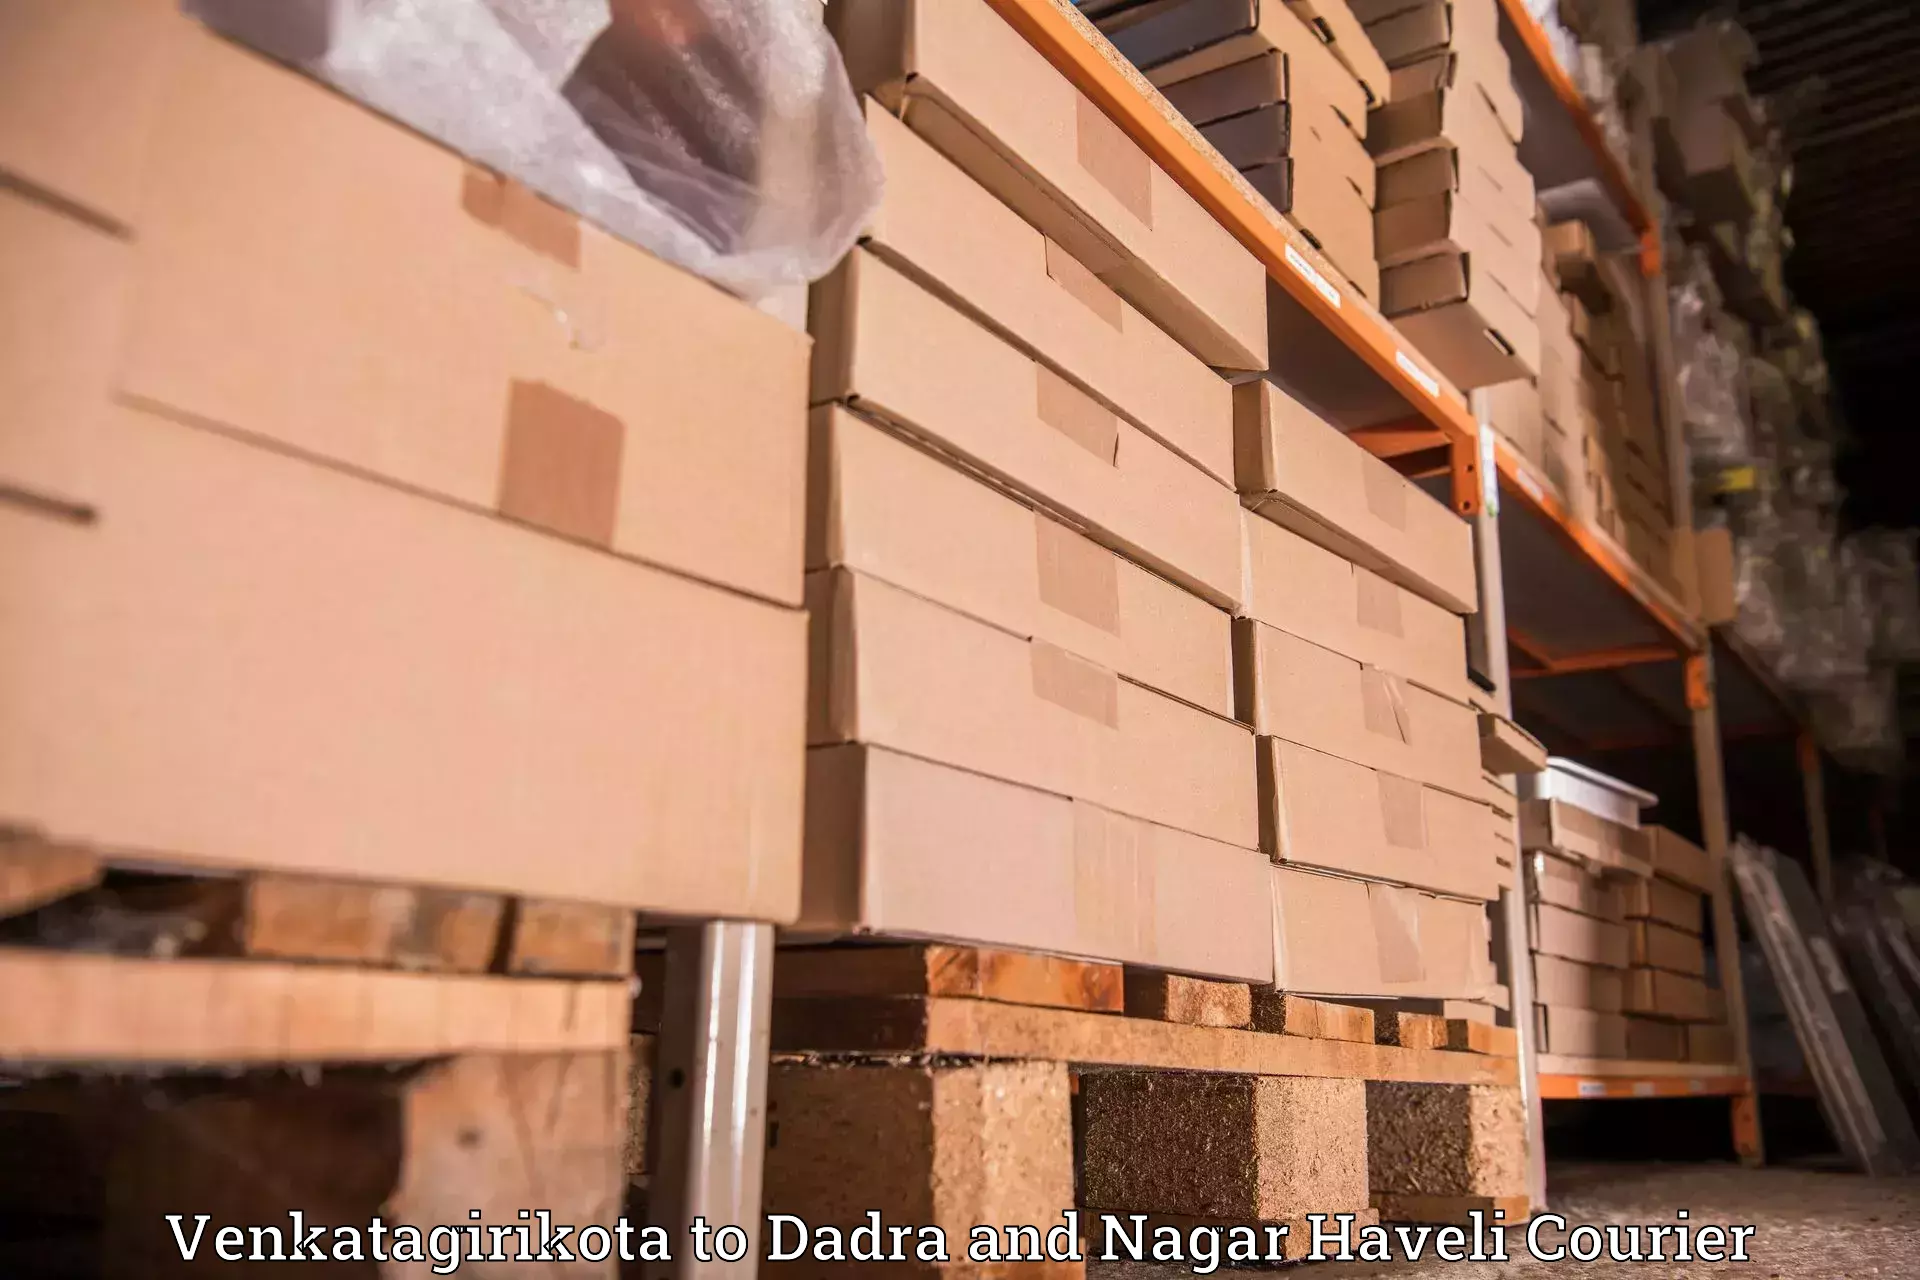 Same-day delivery solutions in Venkatagirikota to Dadra and Nagar Haveli